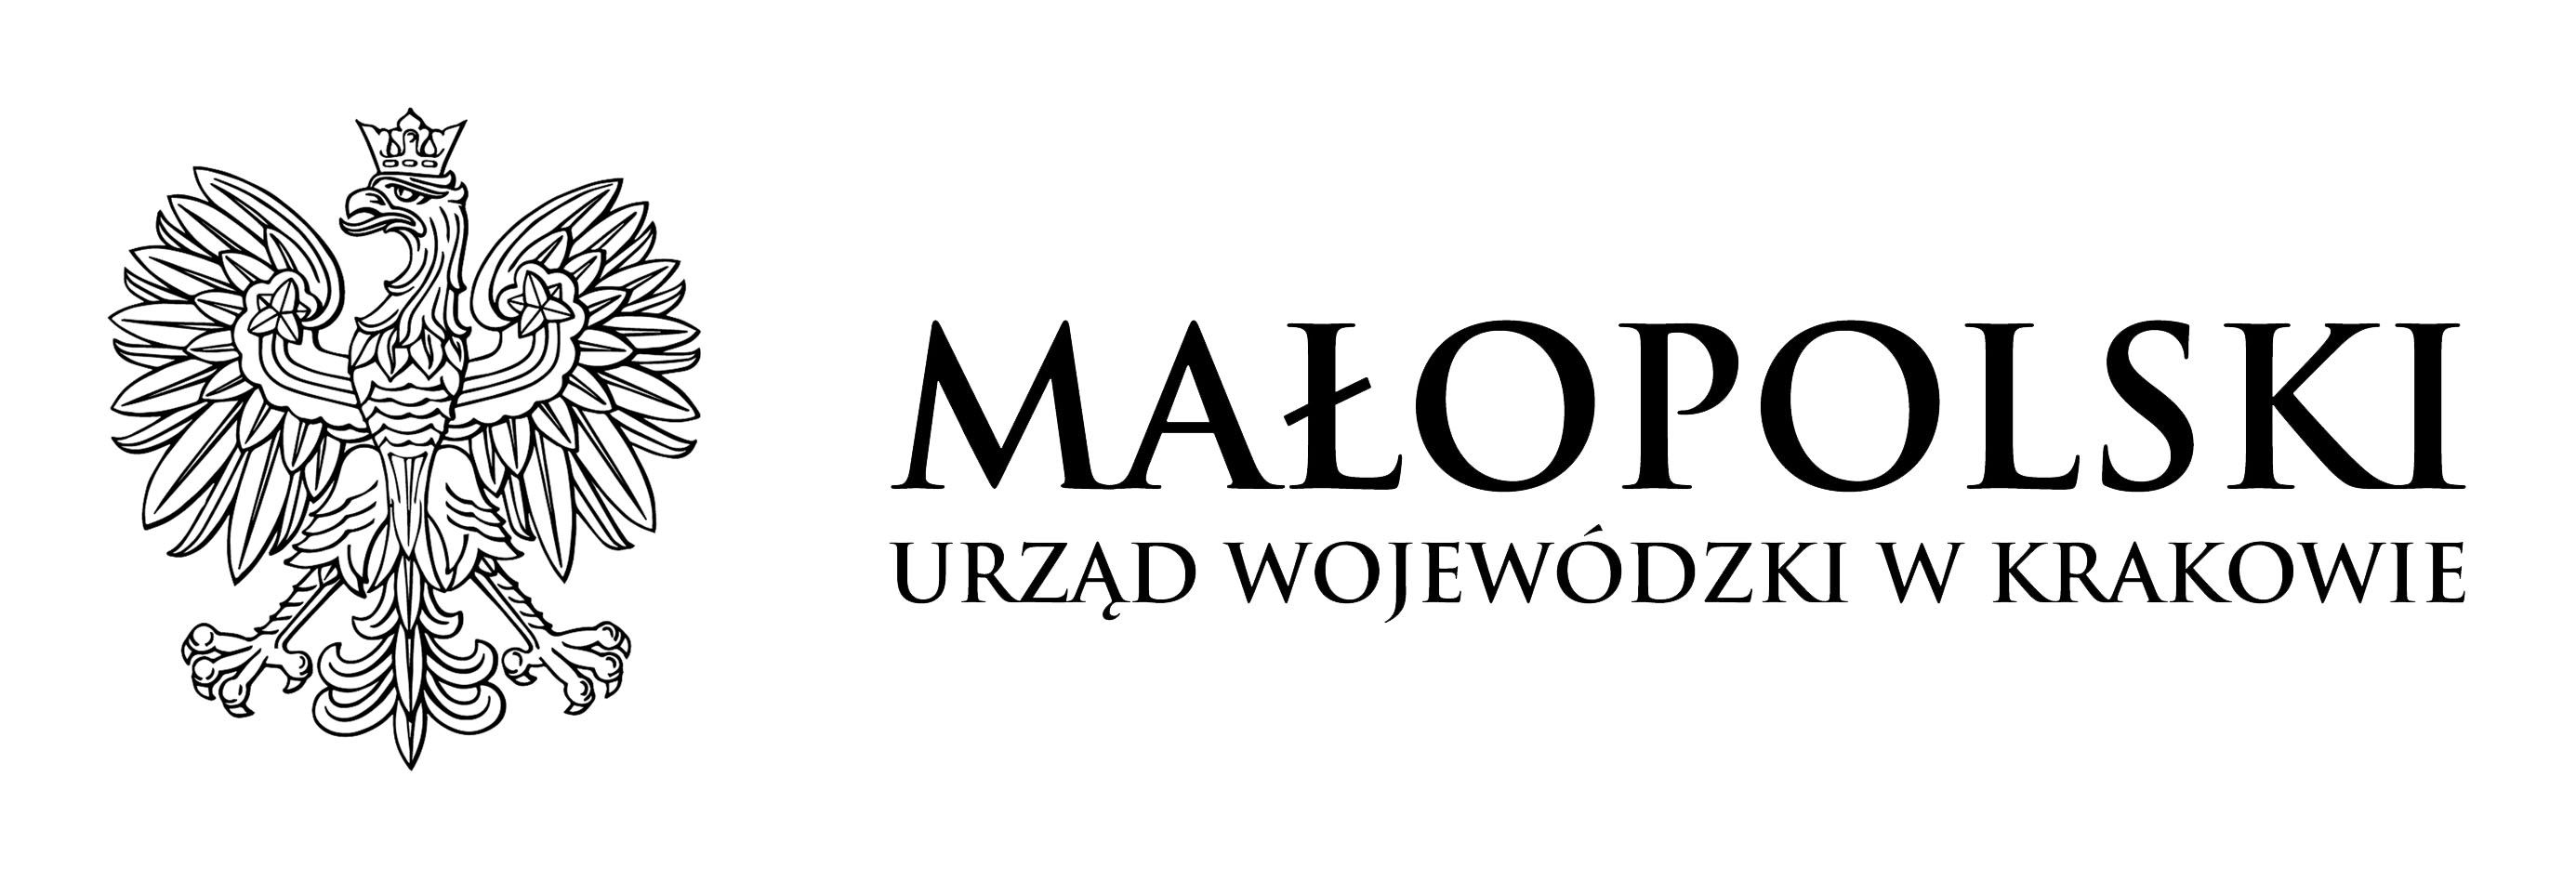 logotyp Małopolskiego Urzędu Wojewódzkiego